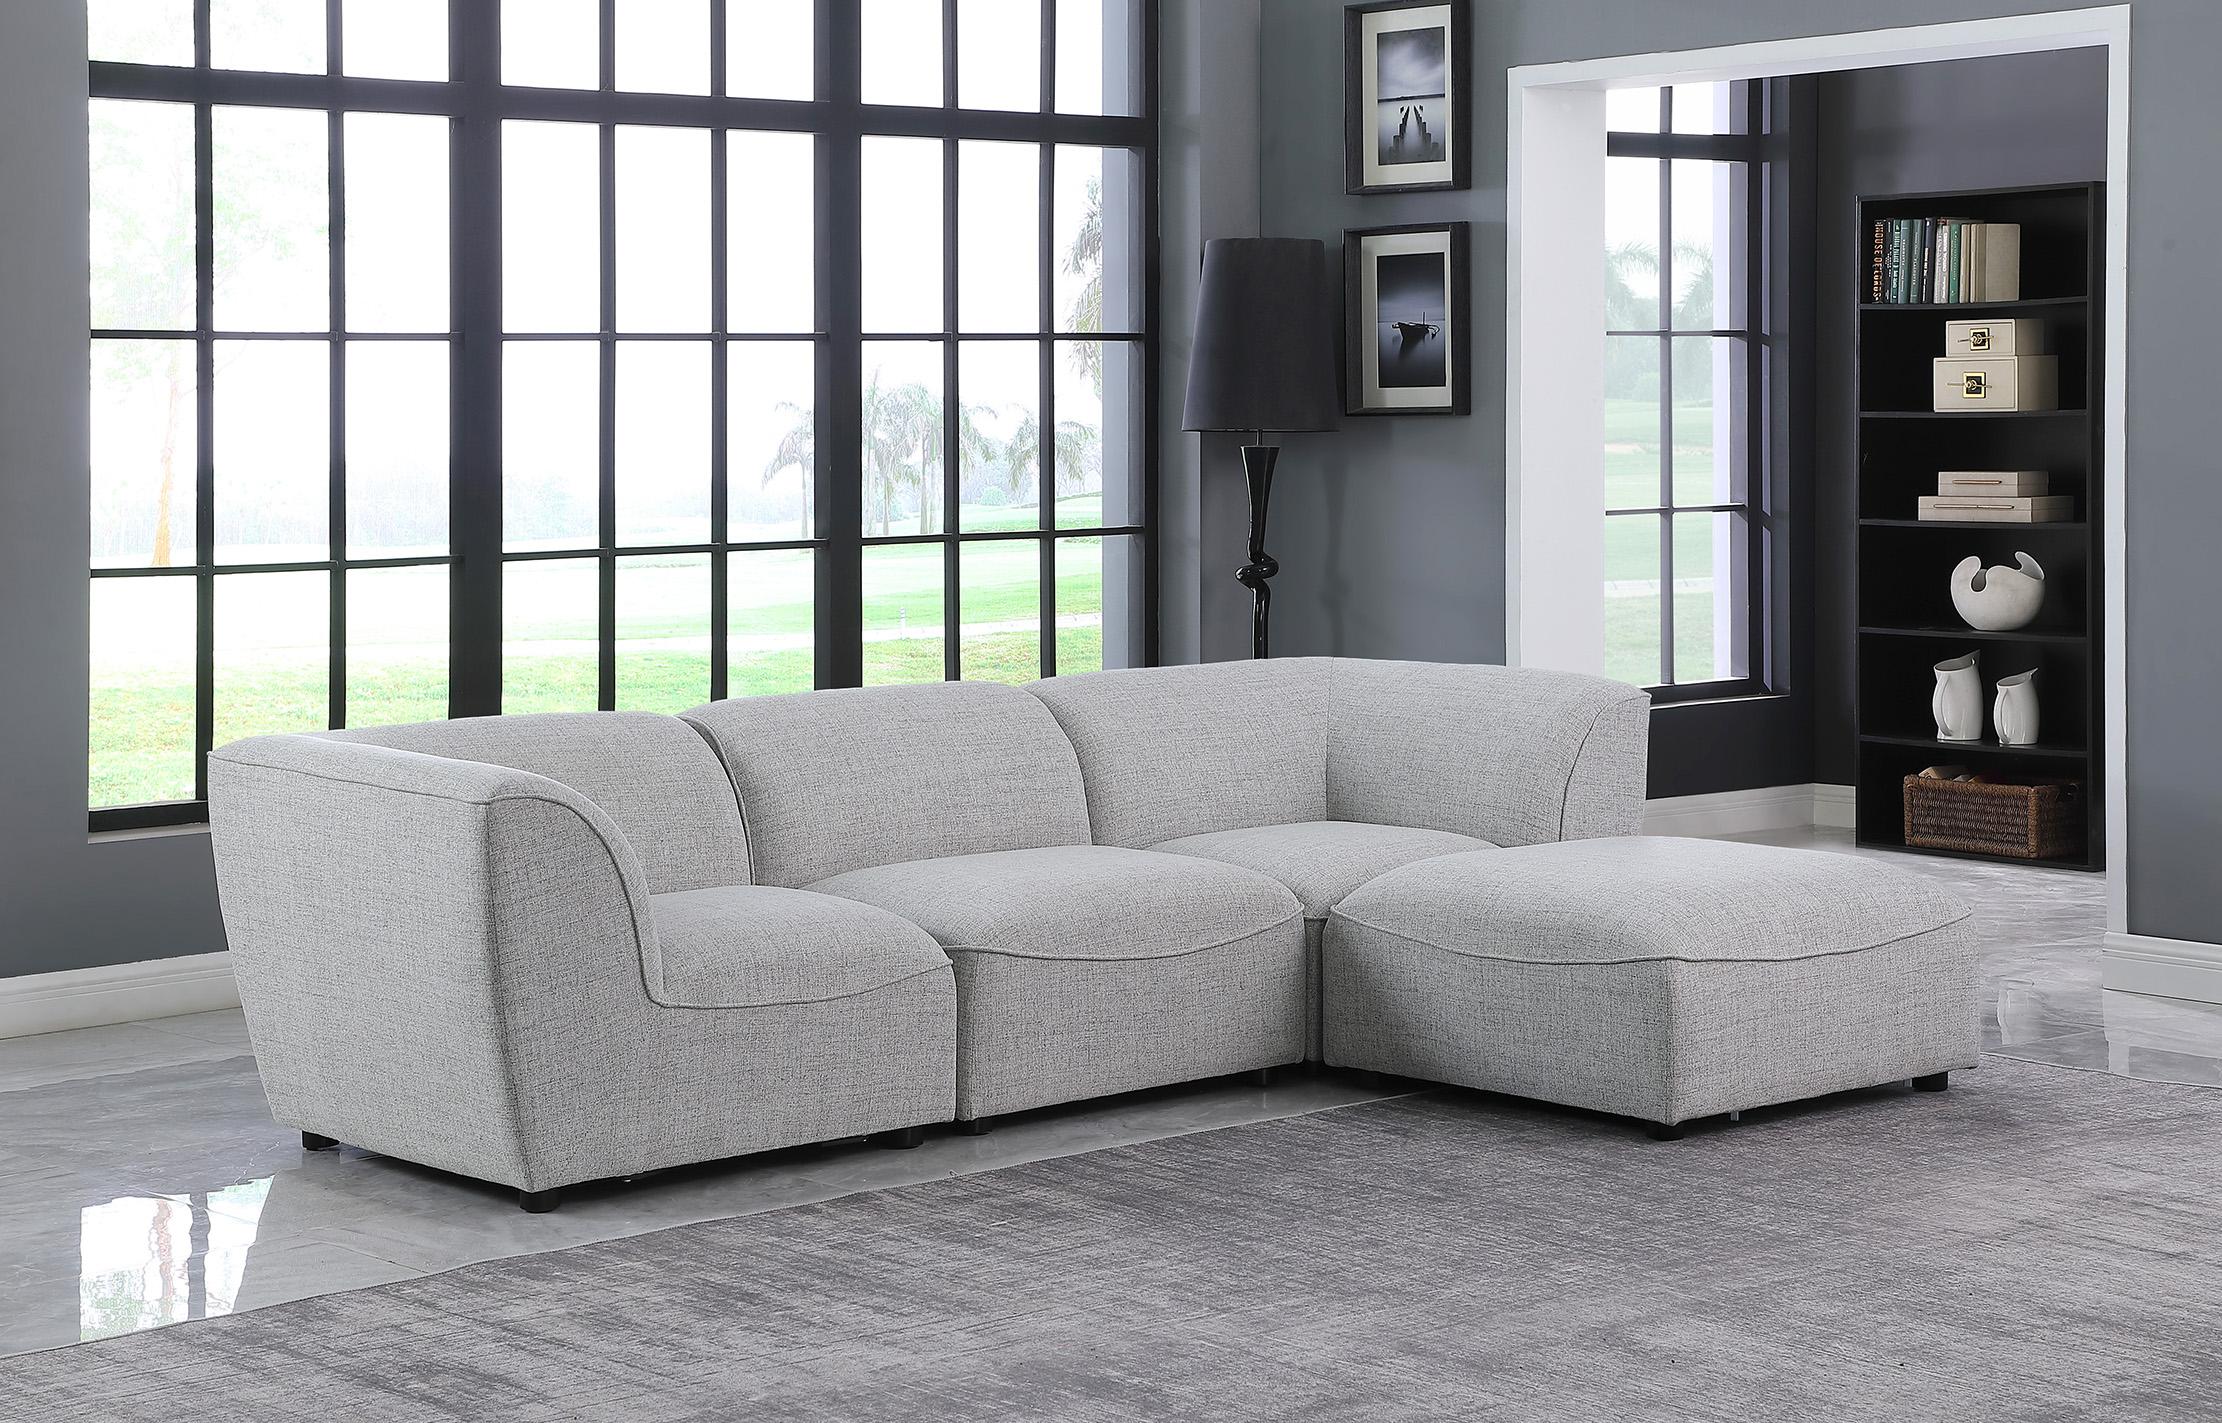 

    
Meridian Furniture MIRAMAR 683Grey-Sec4A Modular Sectional Sofa Gray 683Grey-Sec4A
